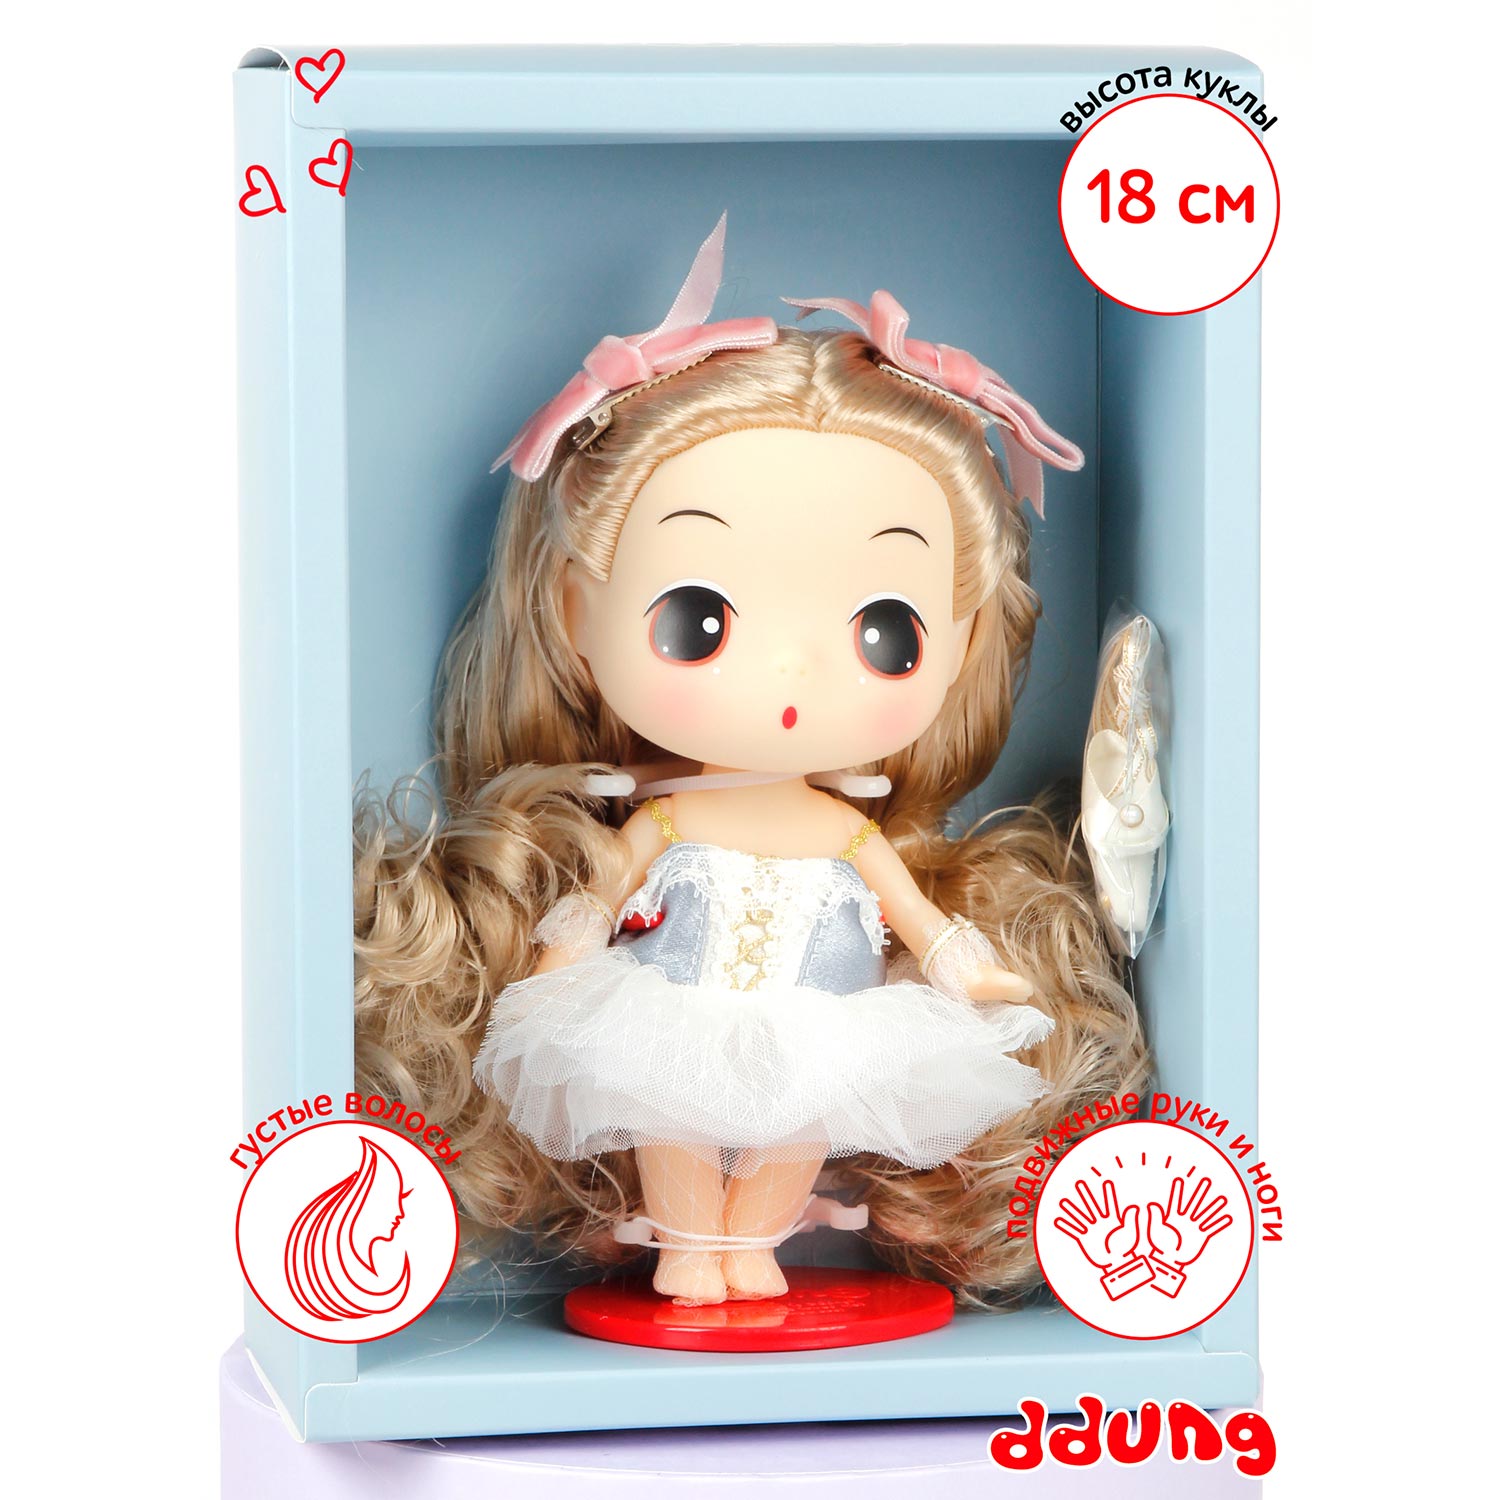 Кукла DDung Балерина 18 см корейская игрушка аниме FDE1848 - фото 10